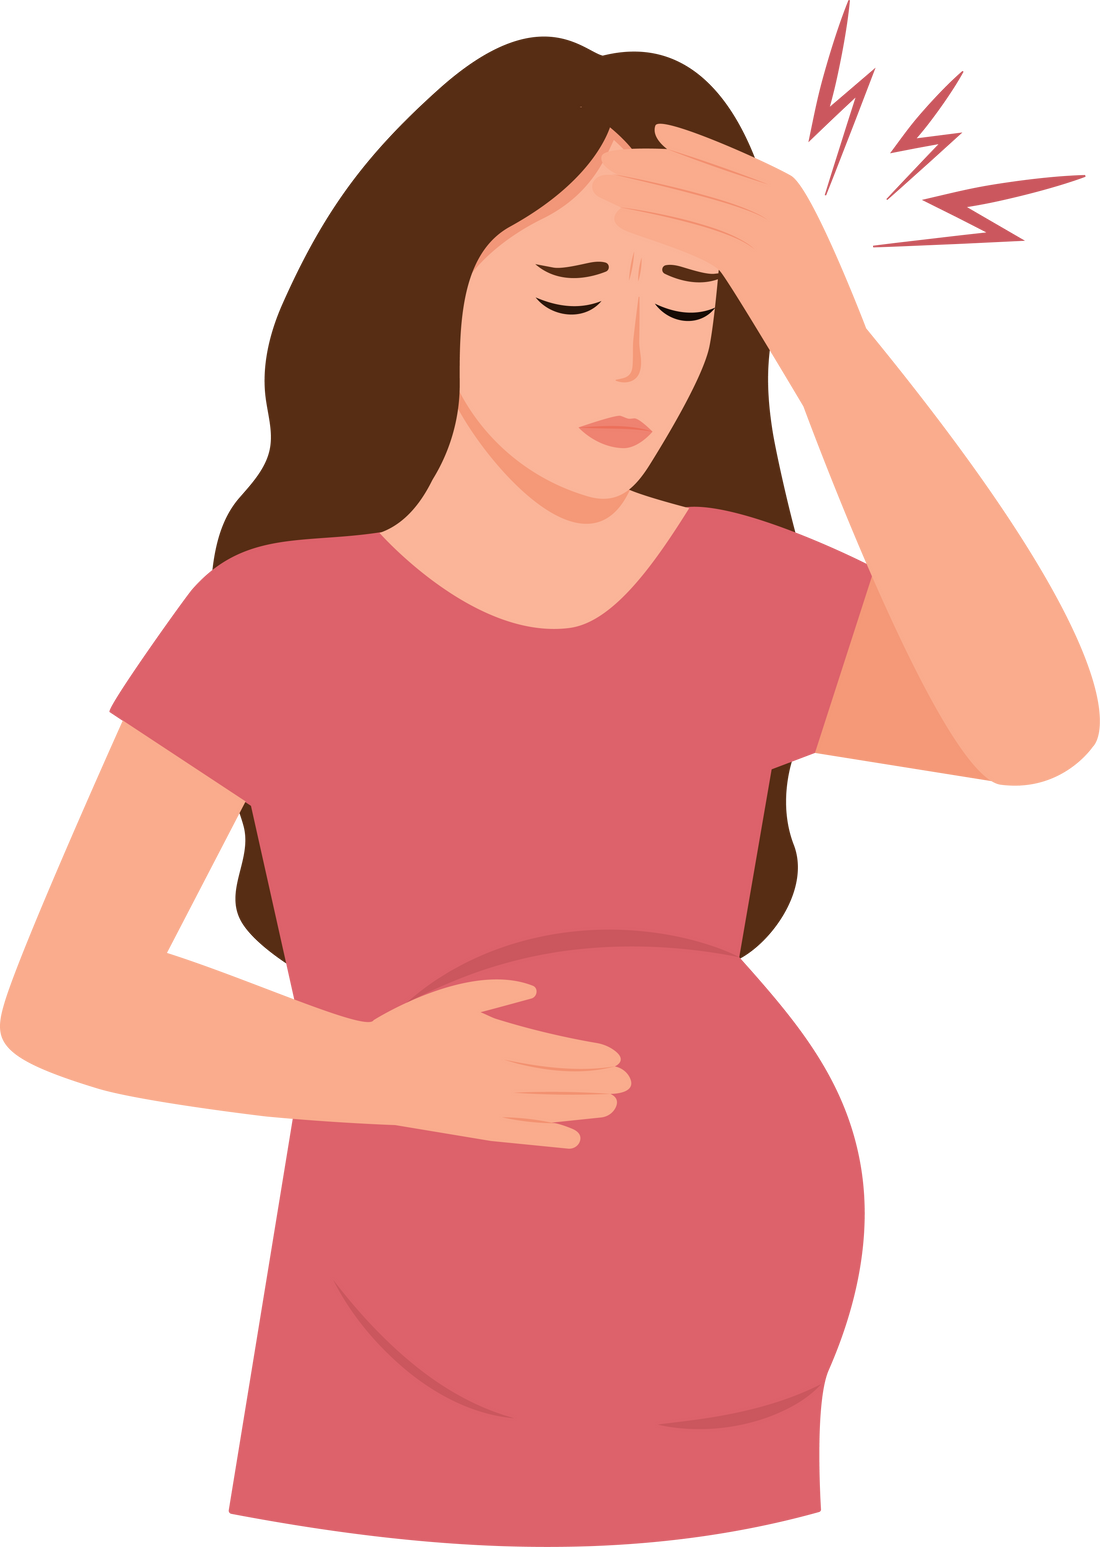 Pregnant with Headache